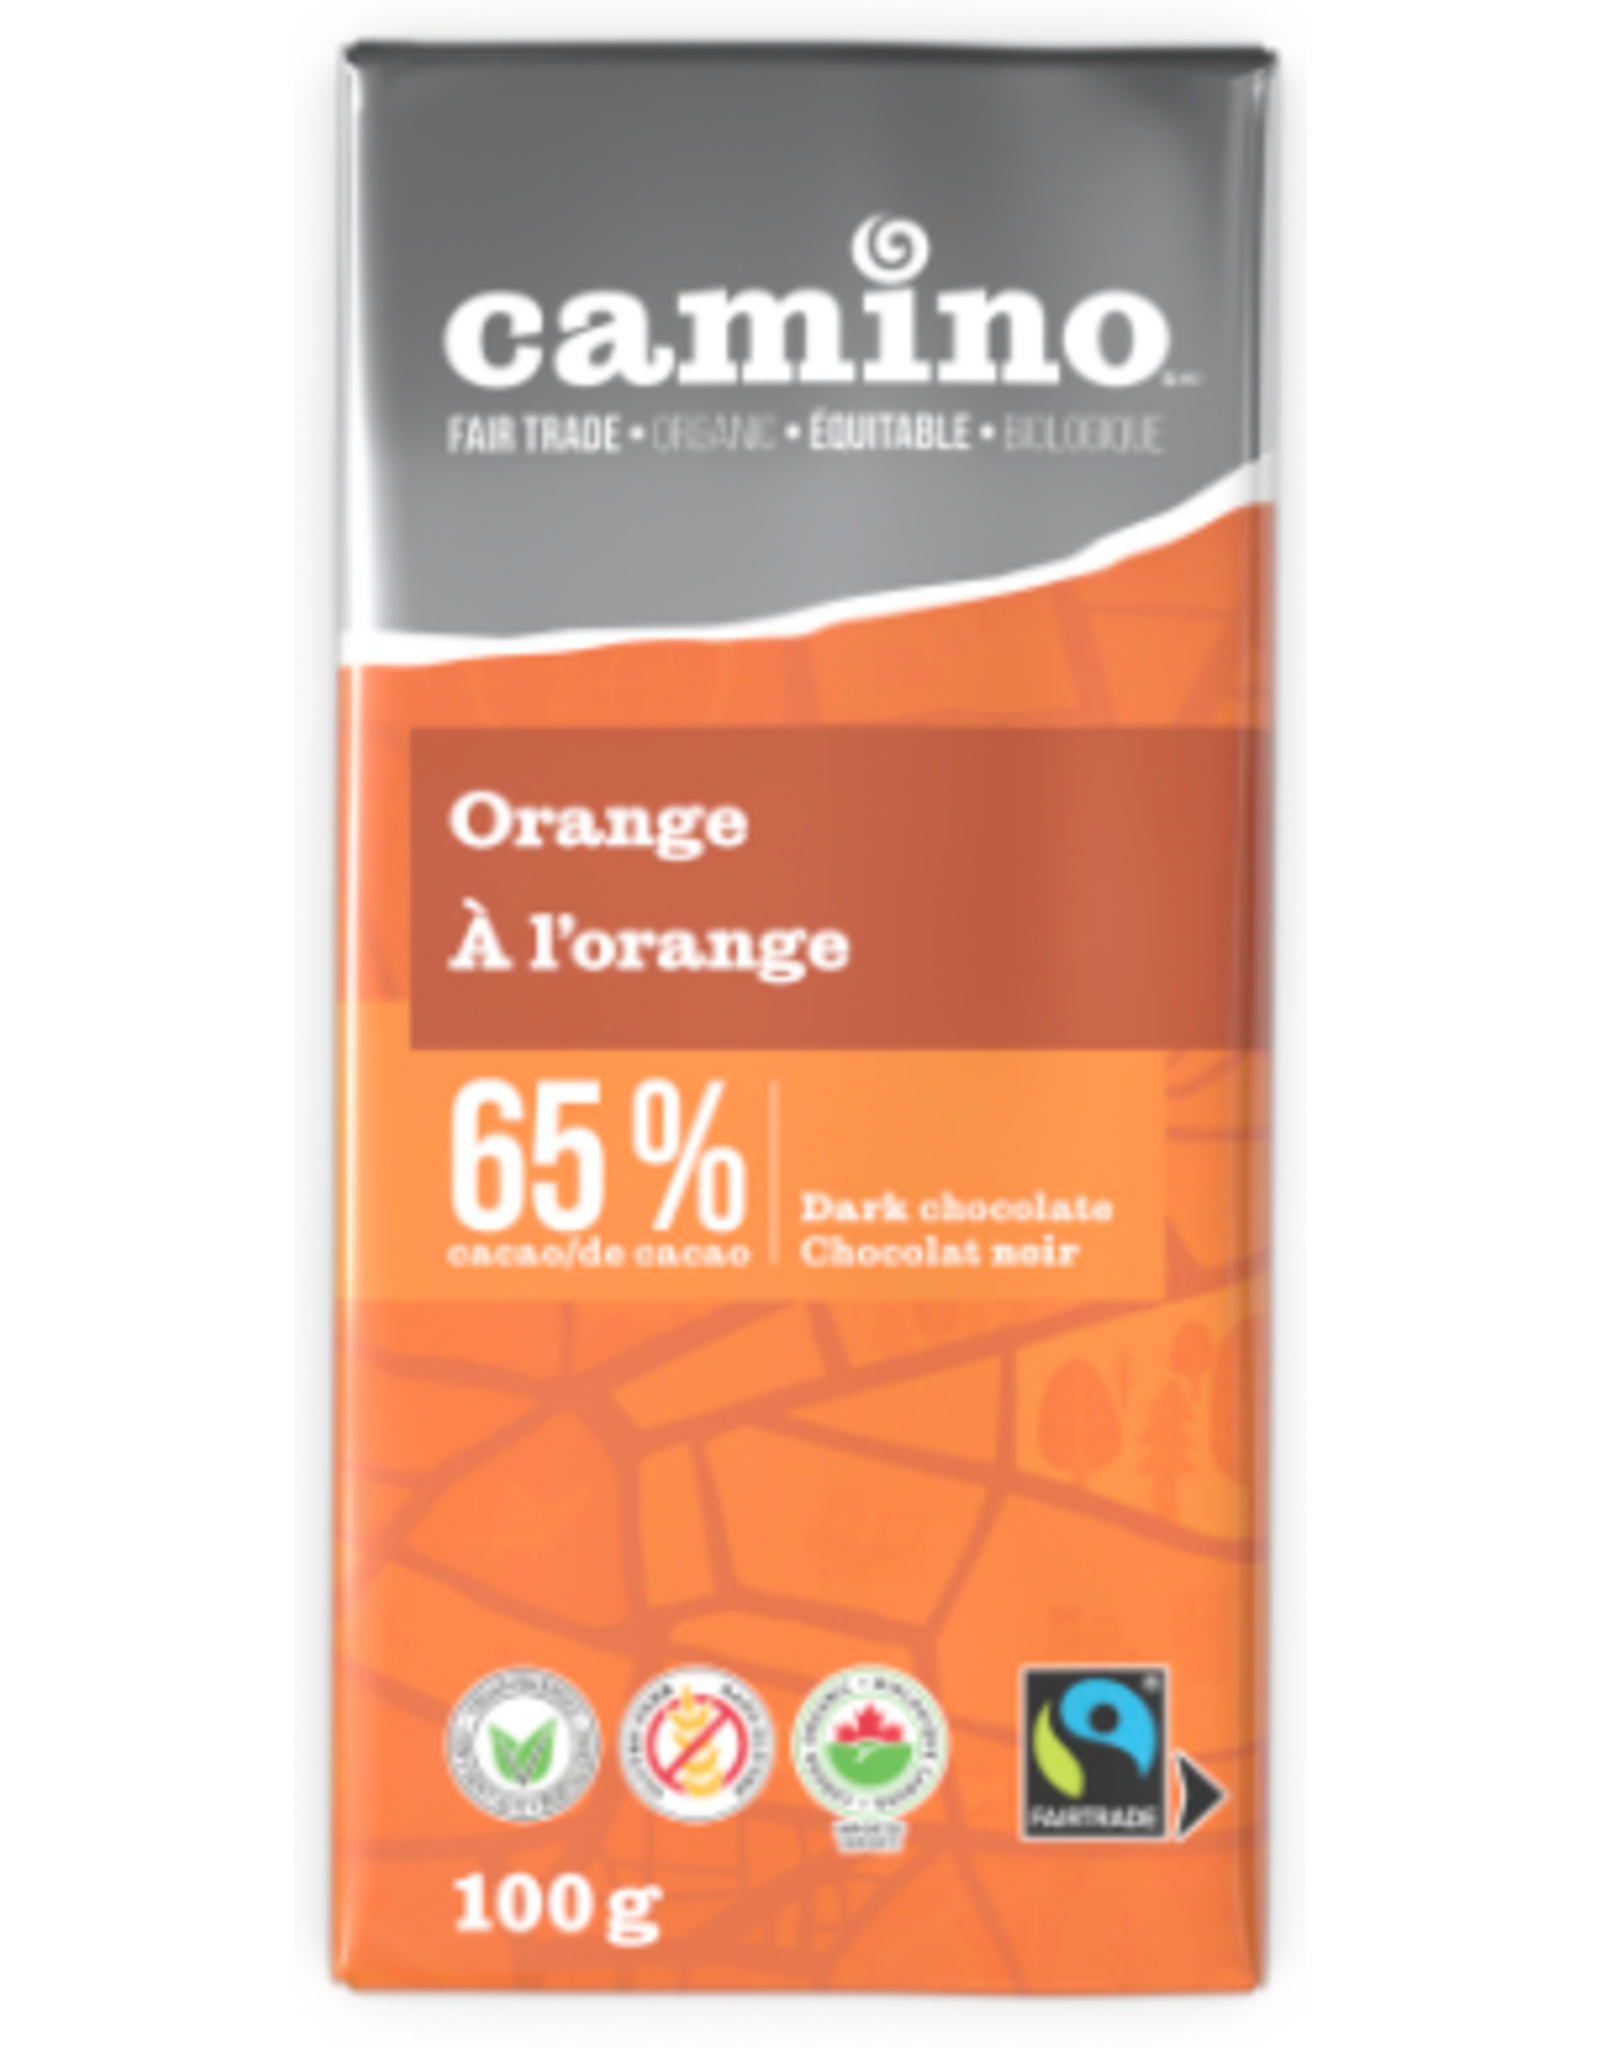 Camino Orange 65% Dark Chocolate Bar, 100g